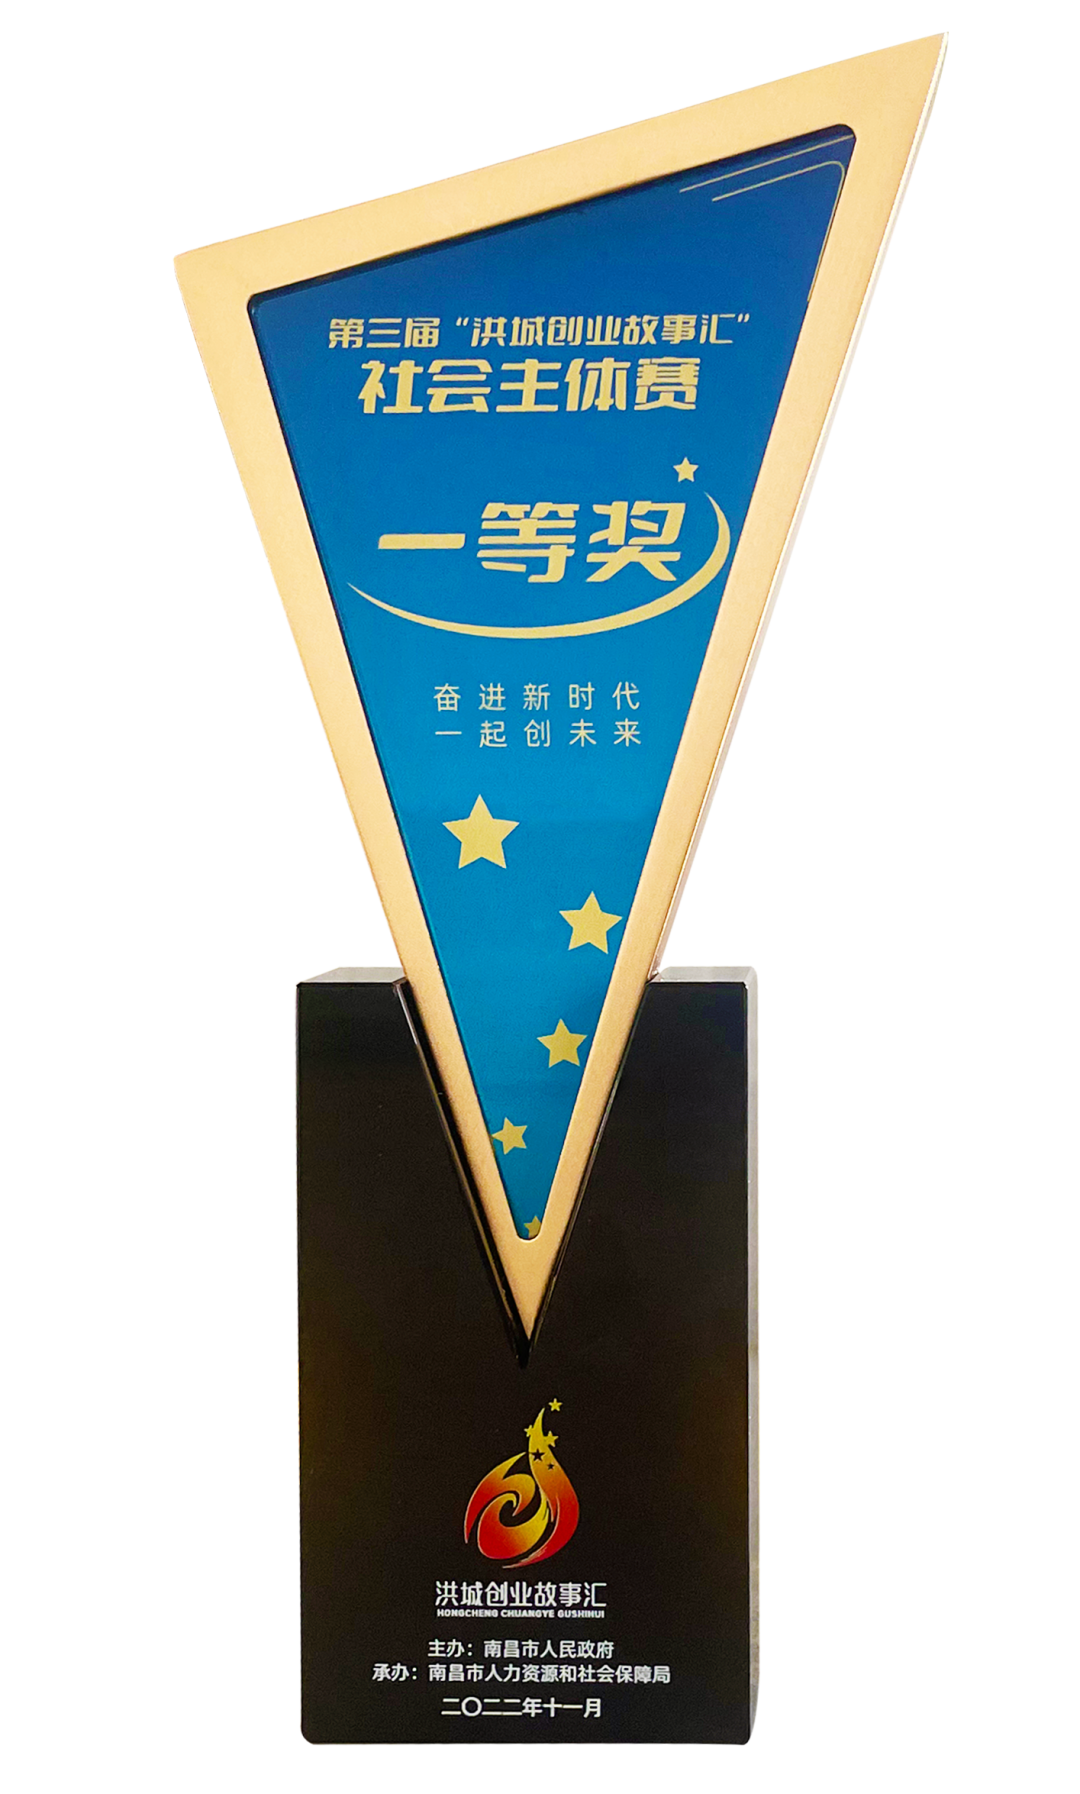 我司董事长刘华先生荣获第三届“洪城创业故事汇”社会主体赛一等奖！